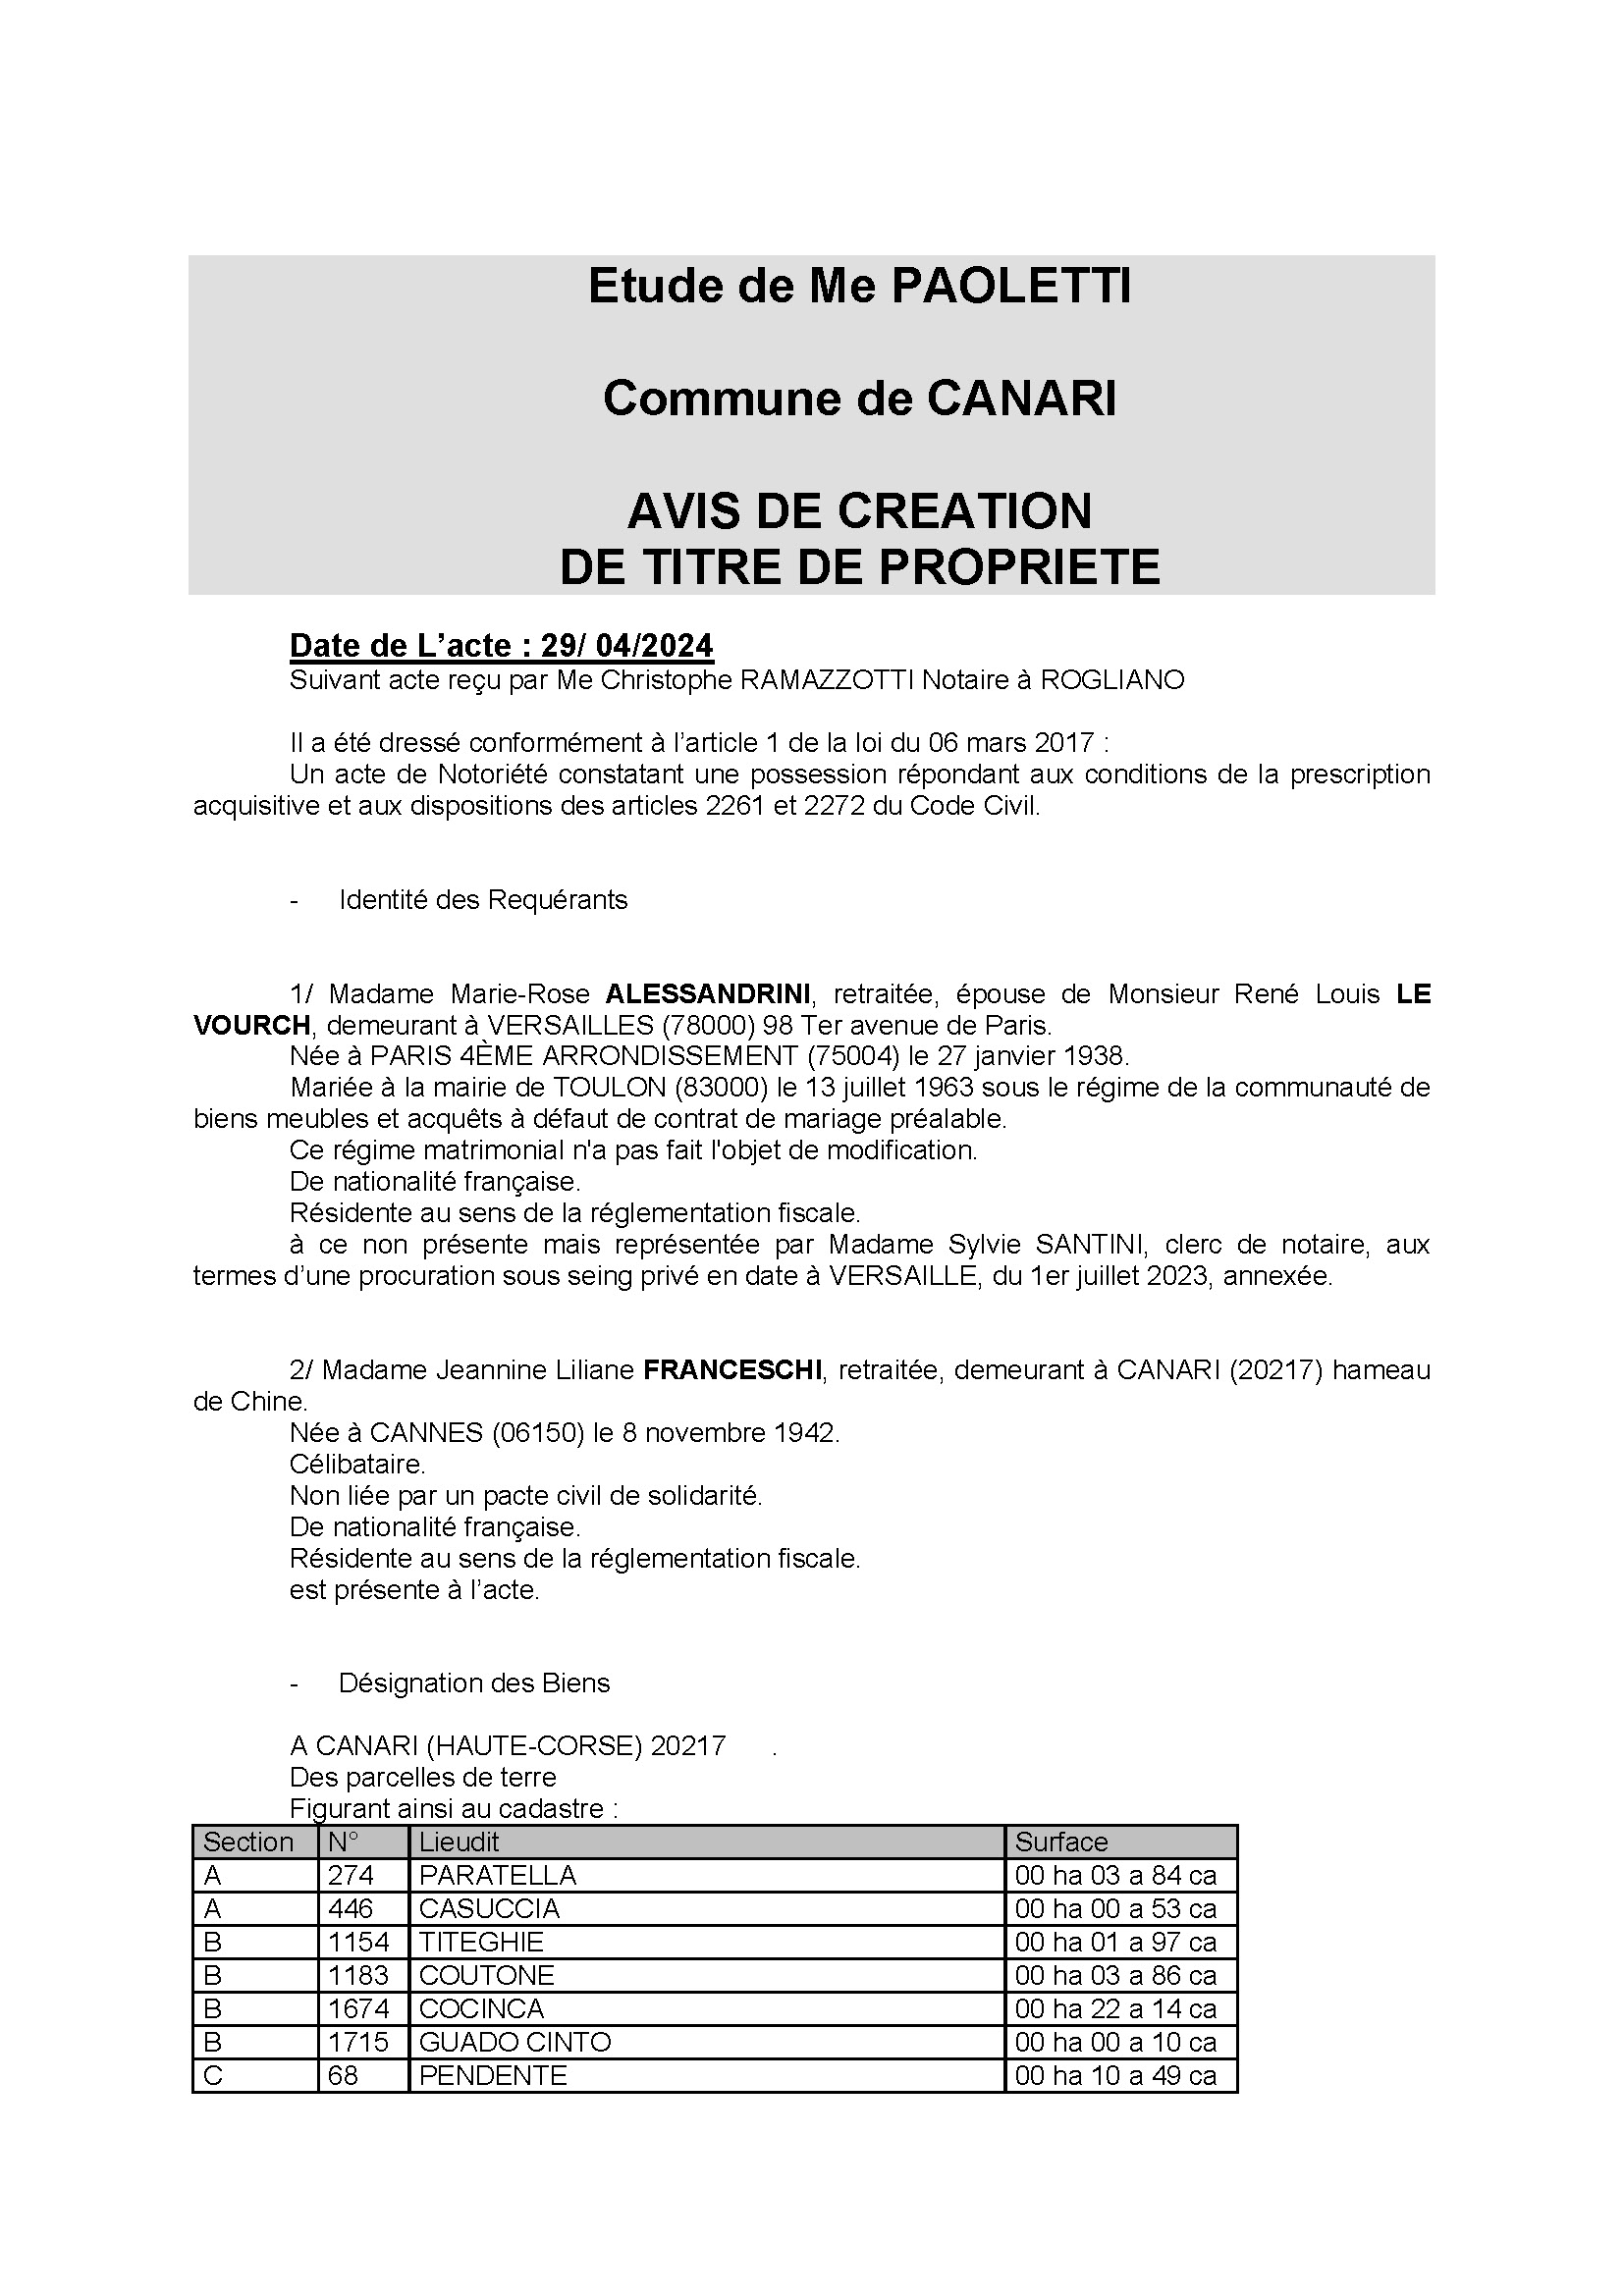 Avis de création de titre de propriété - Commune de Canari (Cismonte)